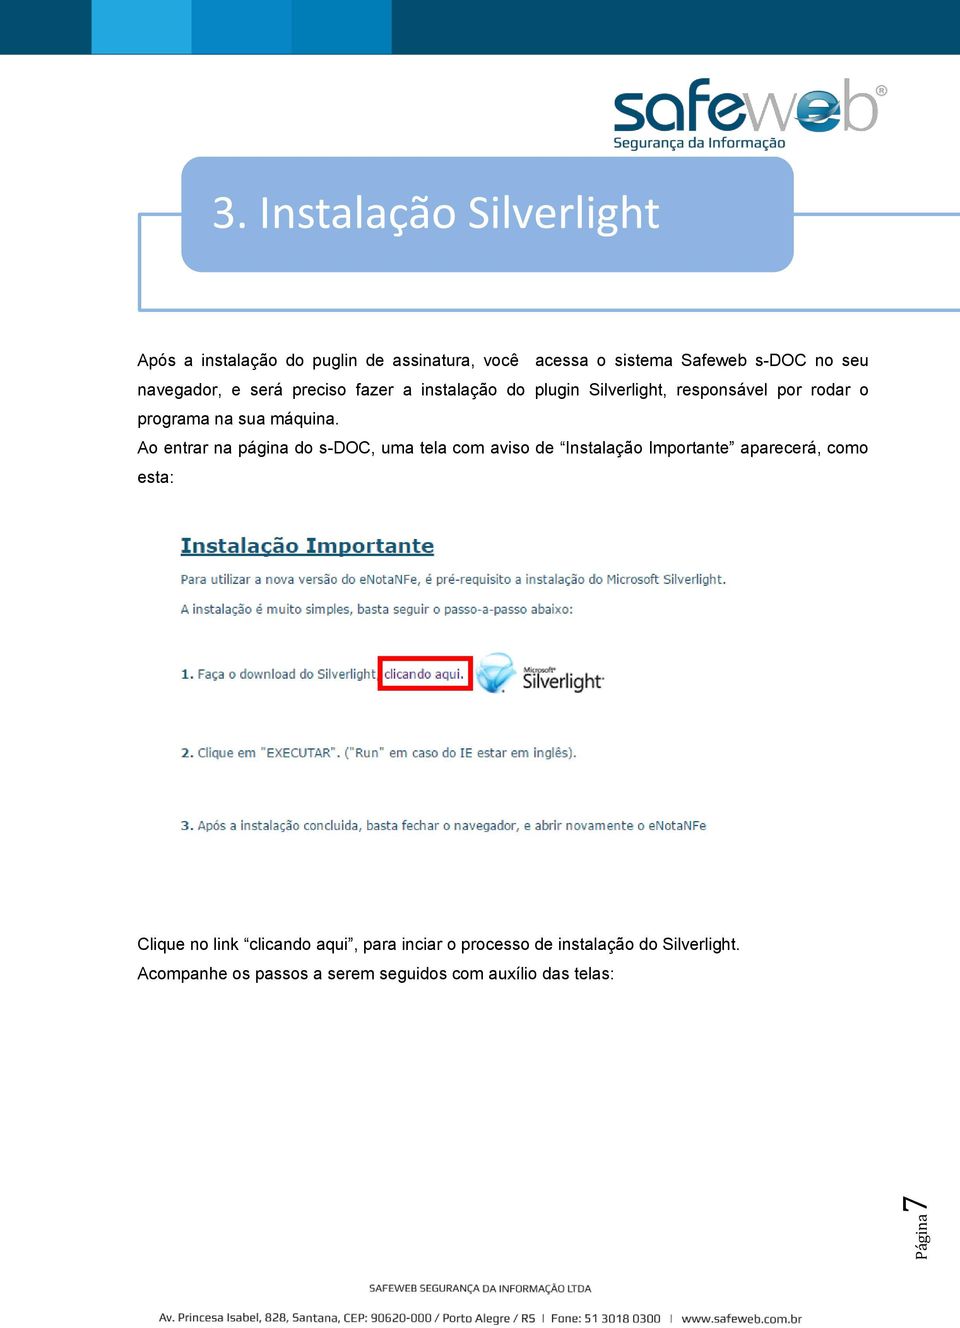 navegador, e será preciso fazer a instalação do plugin Silverlight, responsável por rodar o programa na sua máquina.